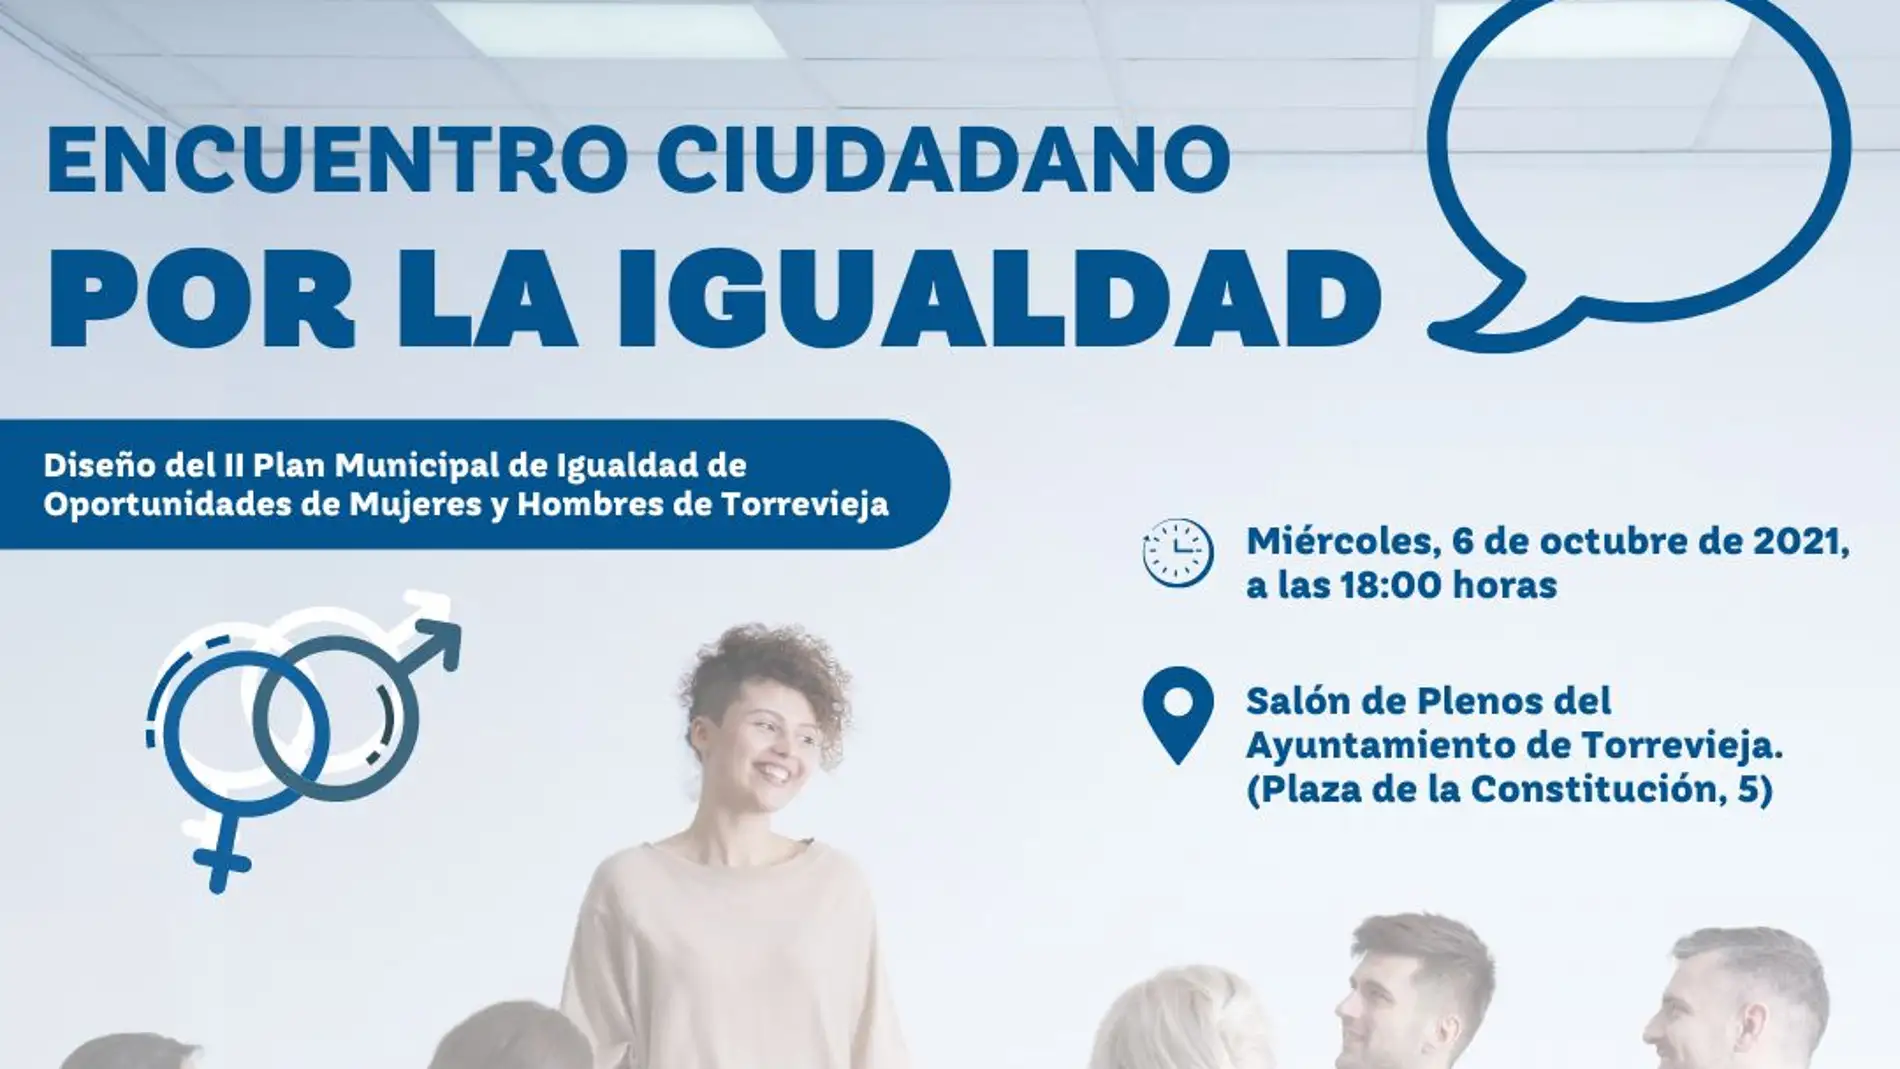 El miércoles 6 encuentro ciudadano por la igualdad en el salon de plenos del Ayuntamiento de Torrevieja 